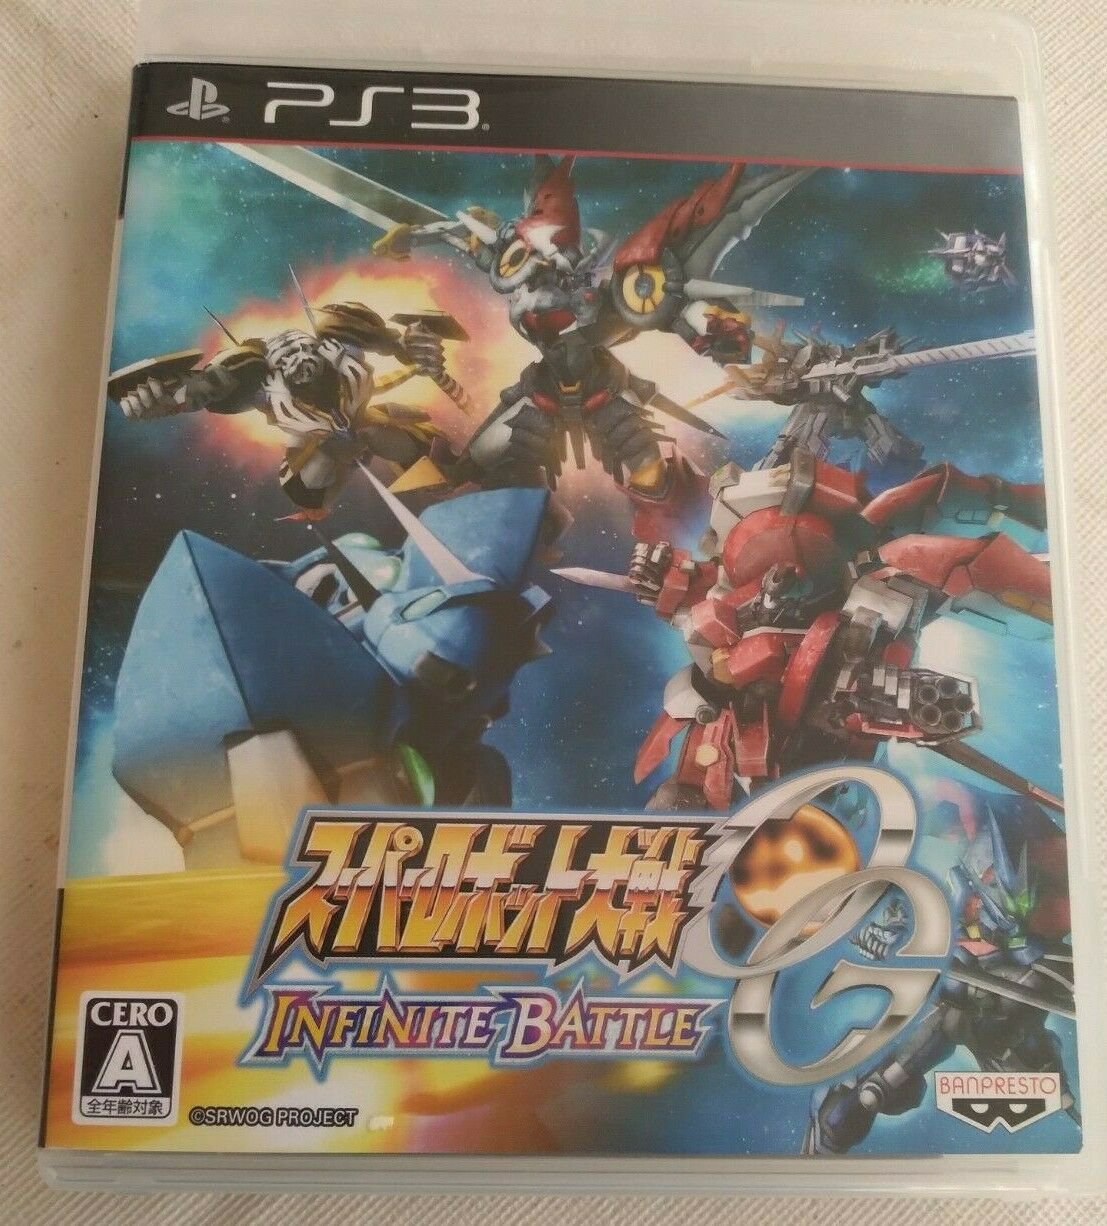 Super robot wars Og Infinite Battle (Sony PlayStation 3) Japan Import PS3